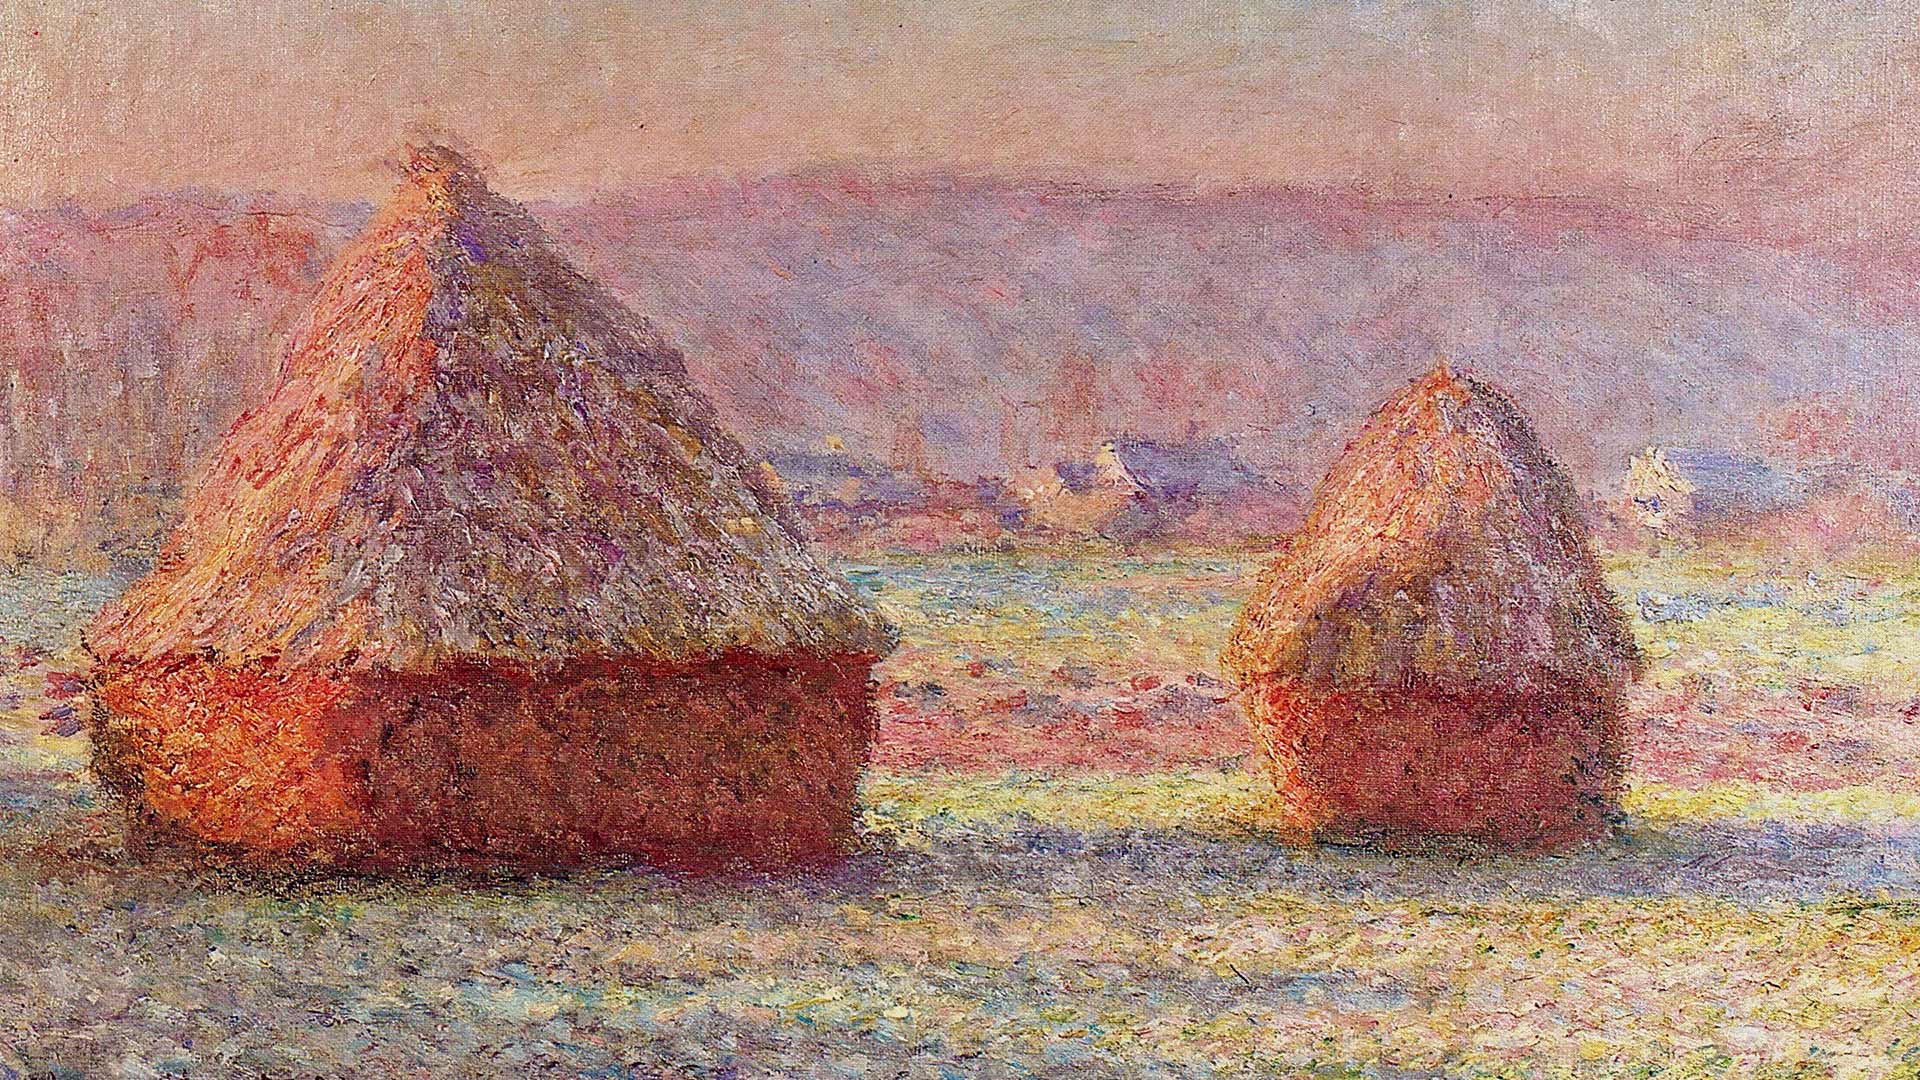 Another of Monet's Haystacks